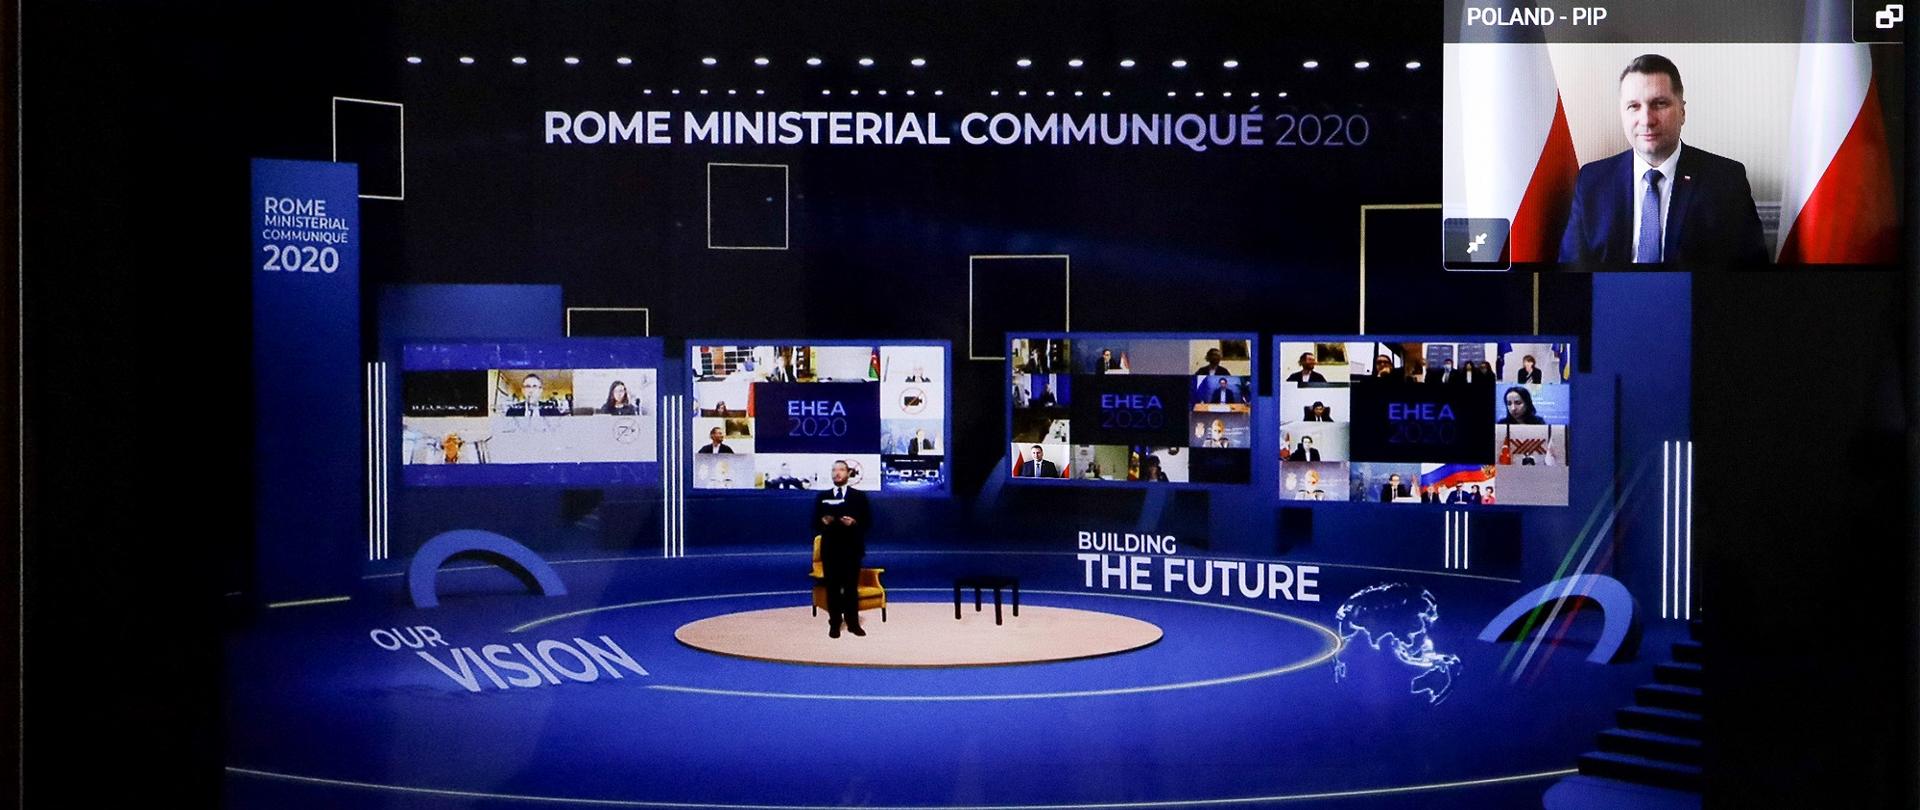 Ekran na którym widać ministrów uczestniczących zdalnie w konferencji. W powiększonym oknie minister Czarnek.